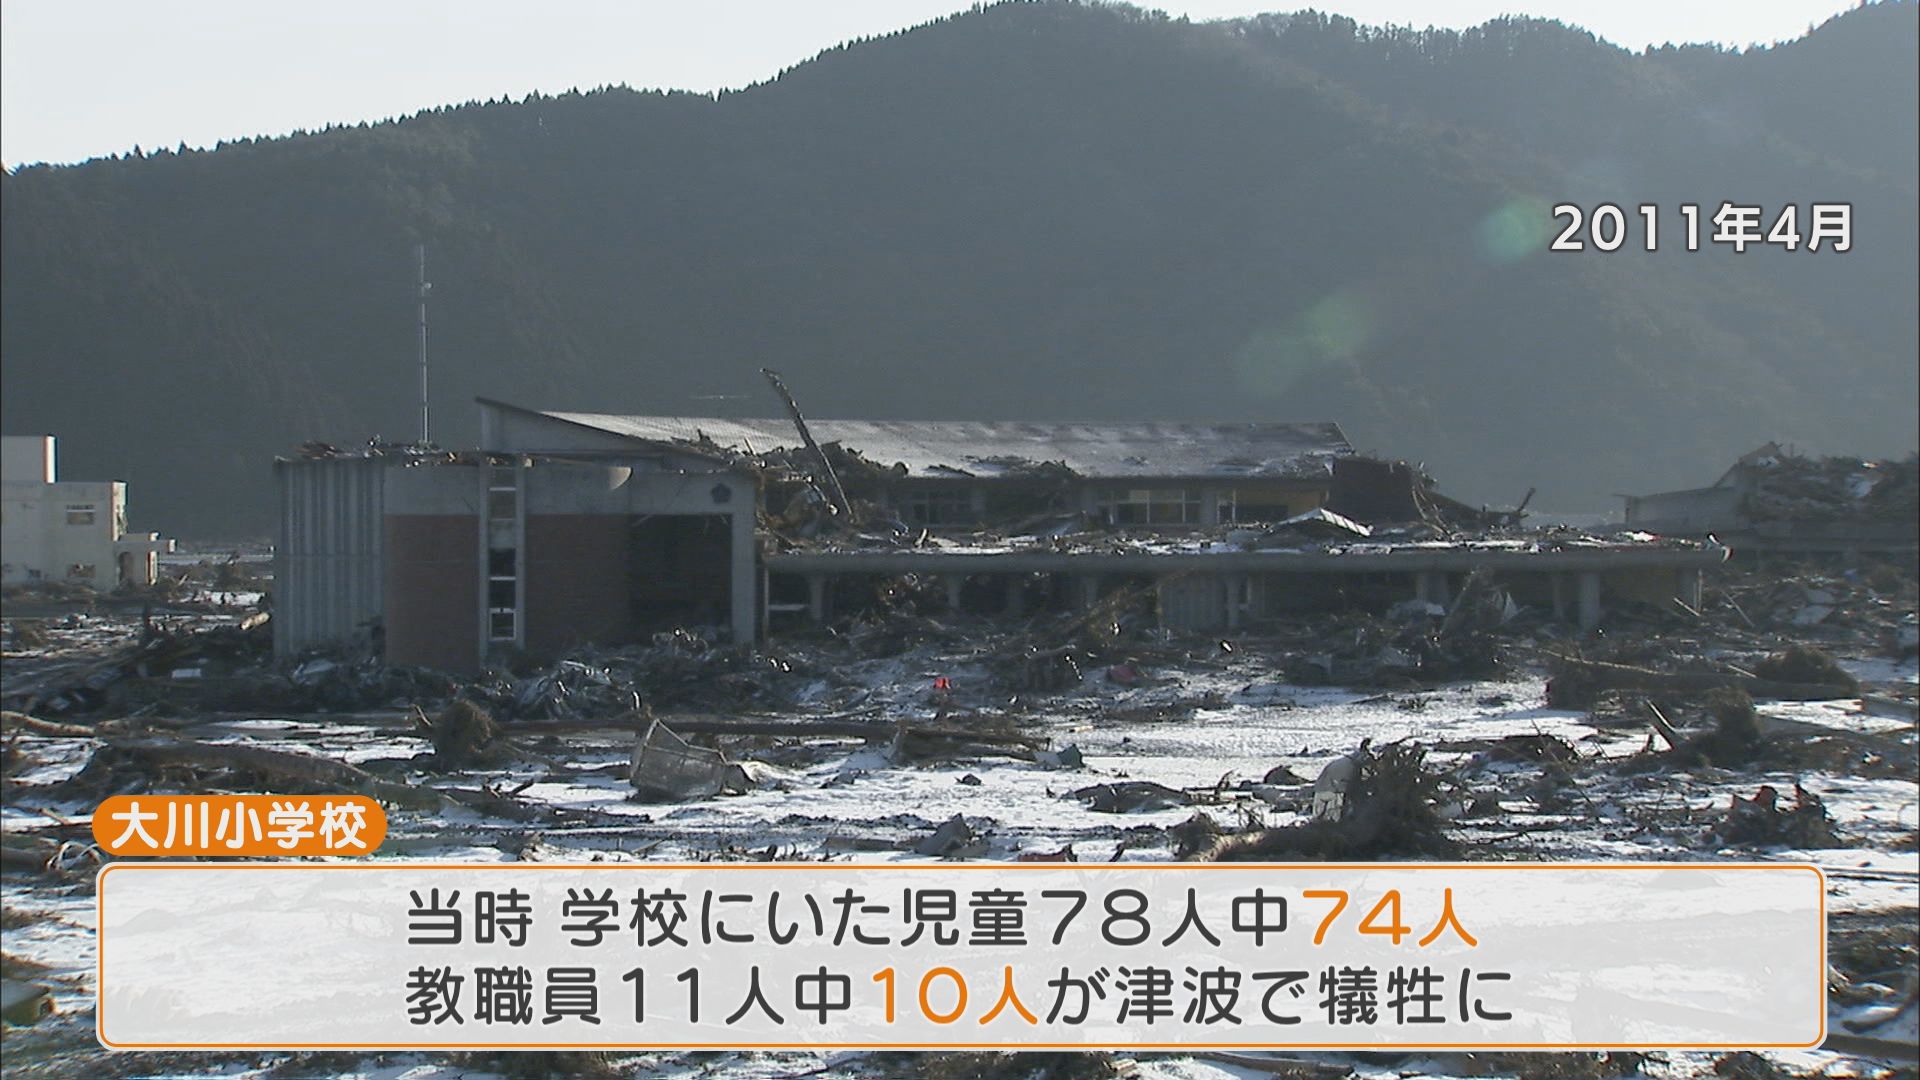 “救われた命”と“失われた命” 大災害の現場で教師に求められる決断とは！？ 東日本大震災の被災地で学ぶ教師たち